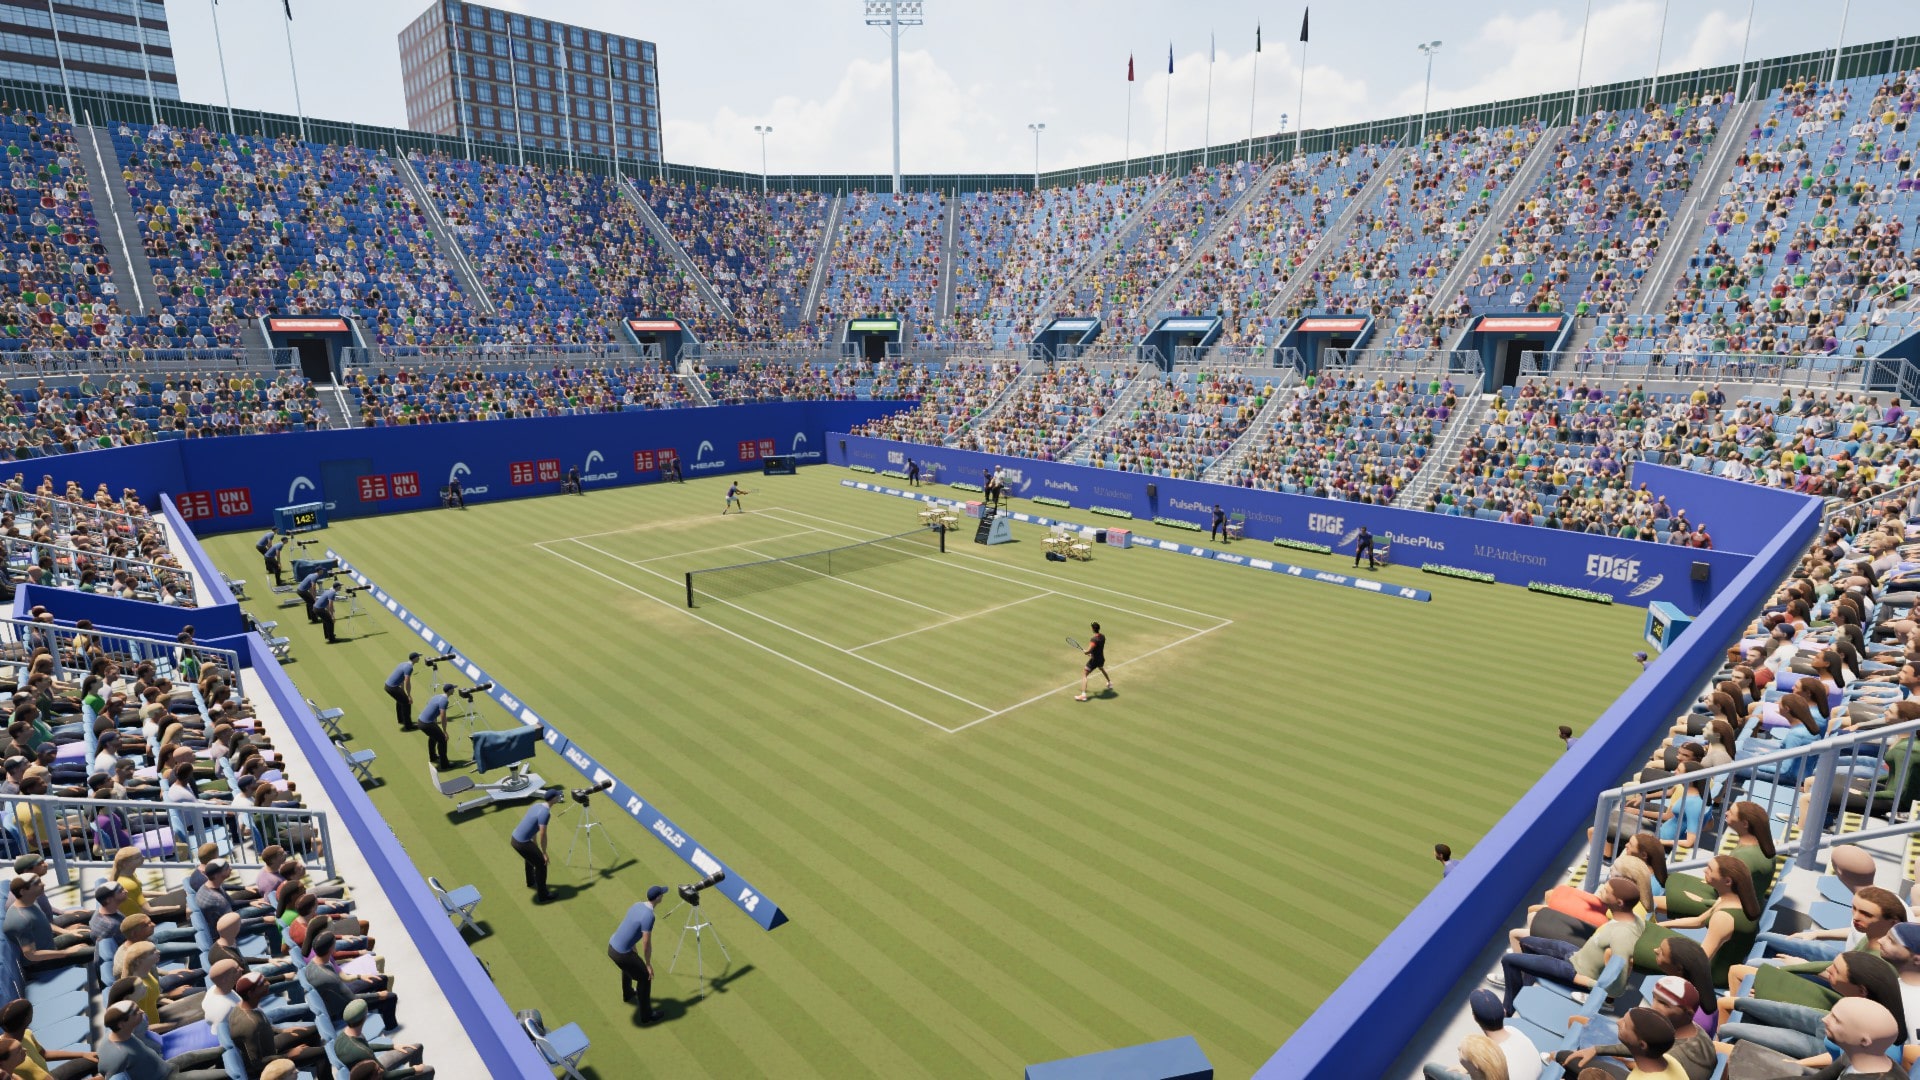 Met de Matchpoint – Tennis Championship-aankondiging is er een nieuwe tennisgame in aantocht